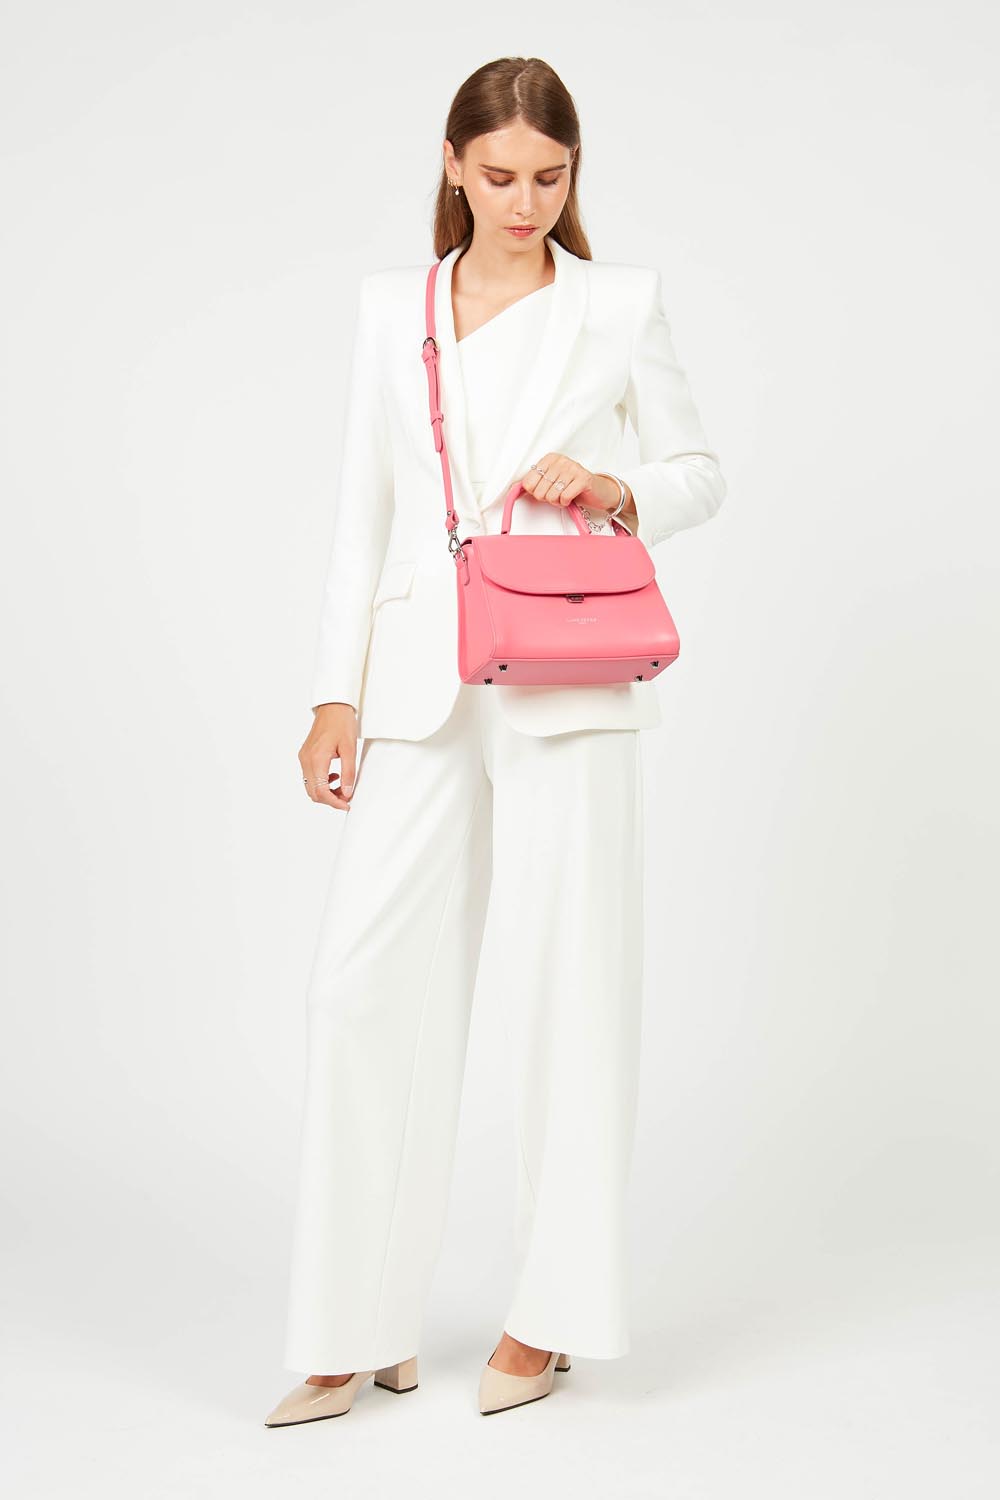 m handbag - suave even #couleur_rose-fonc